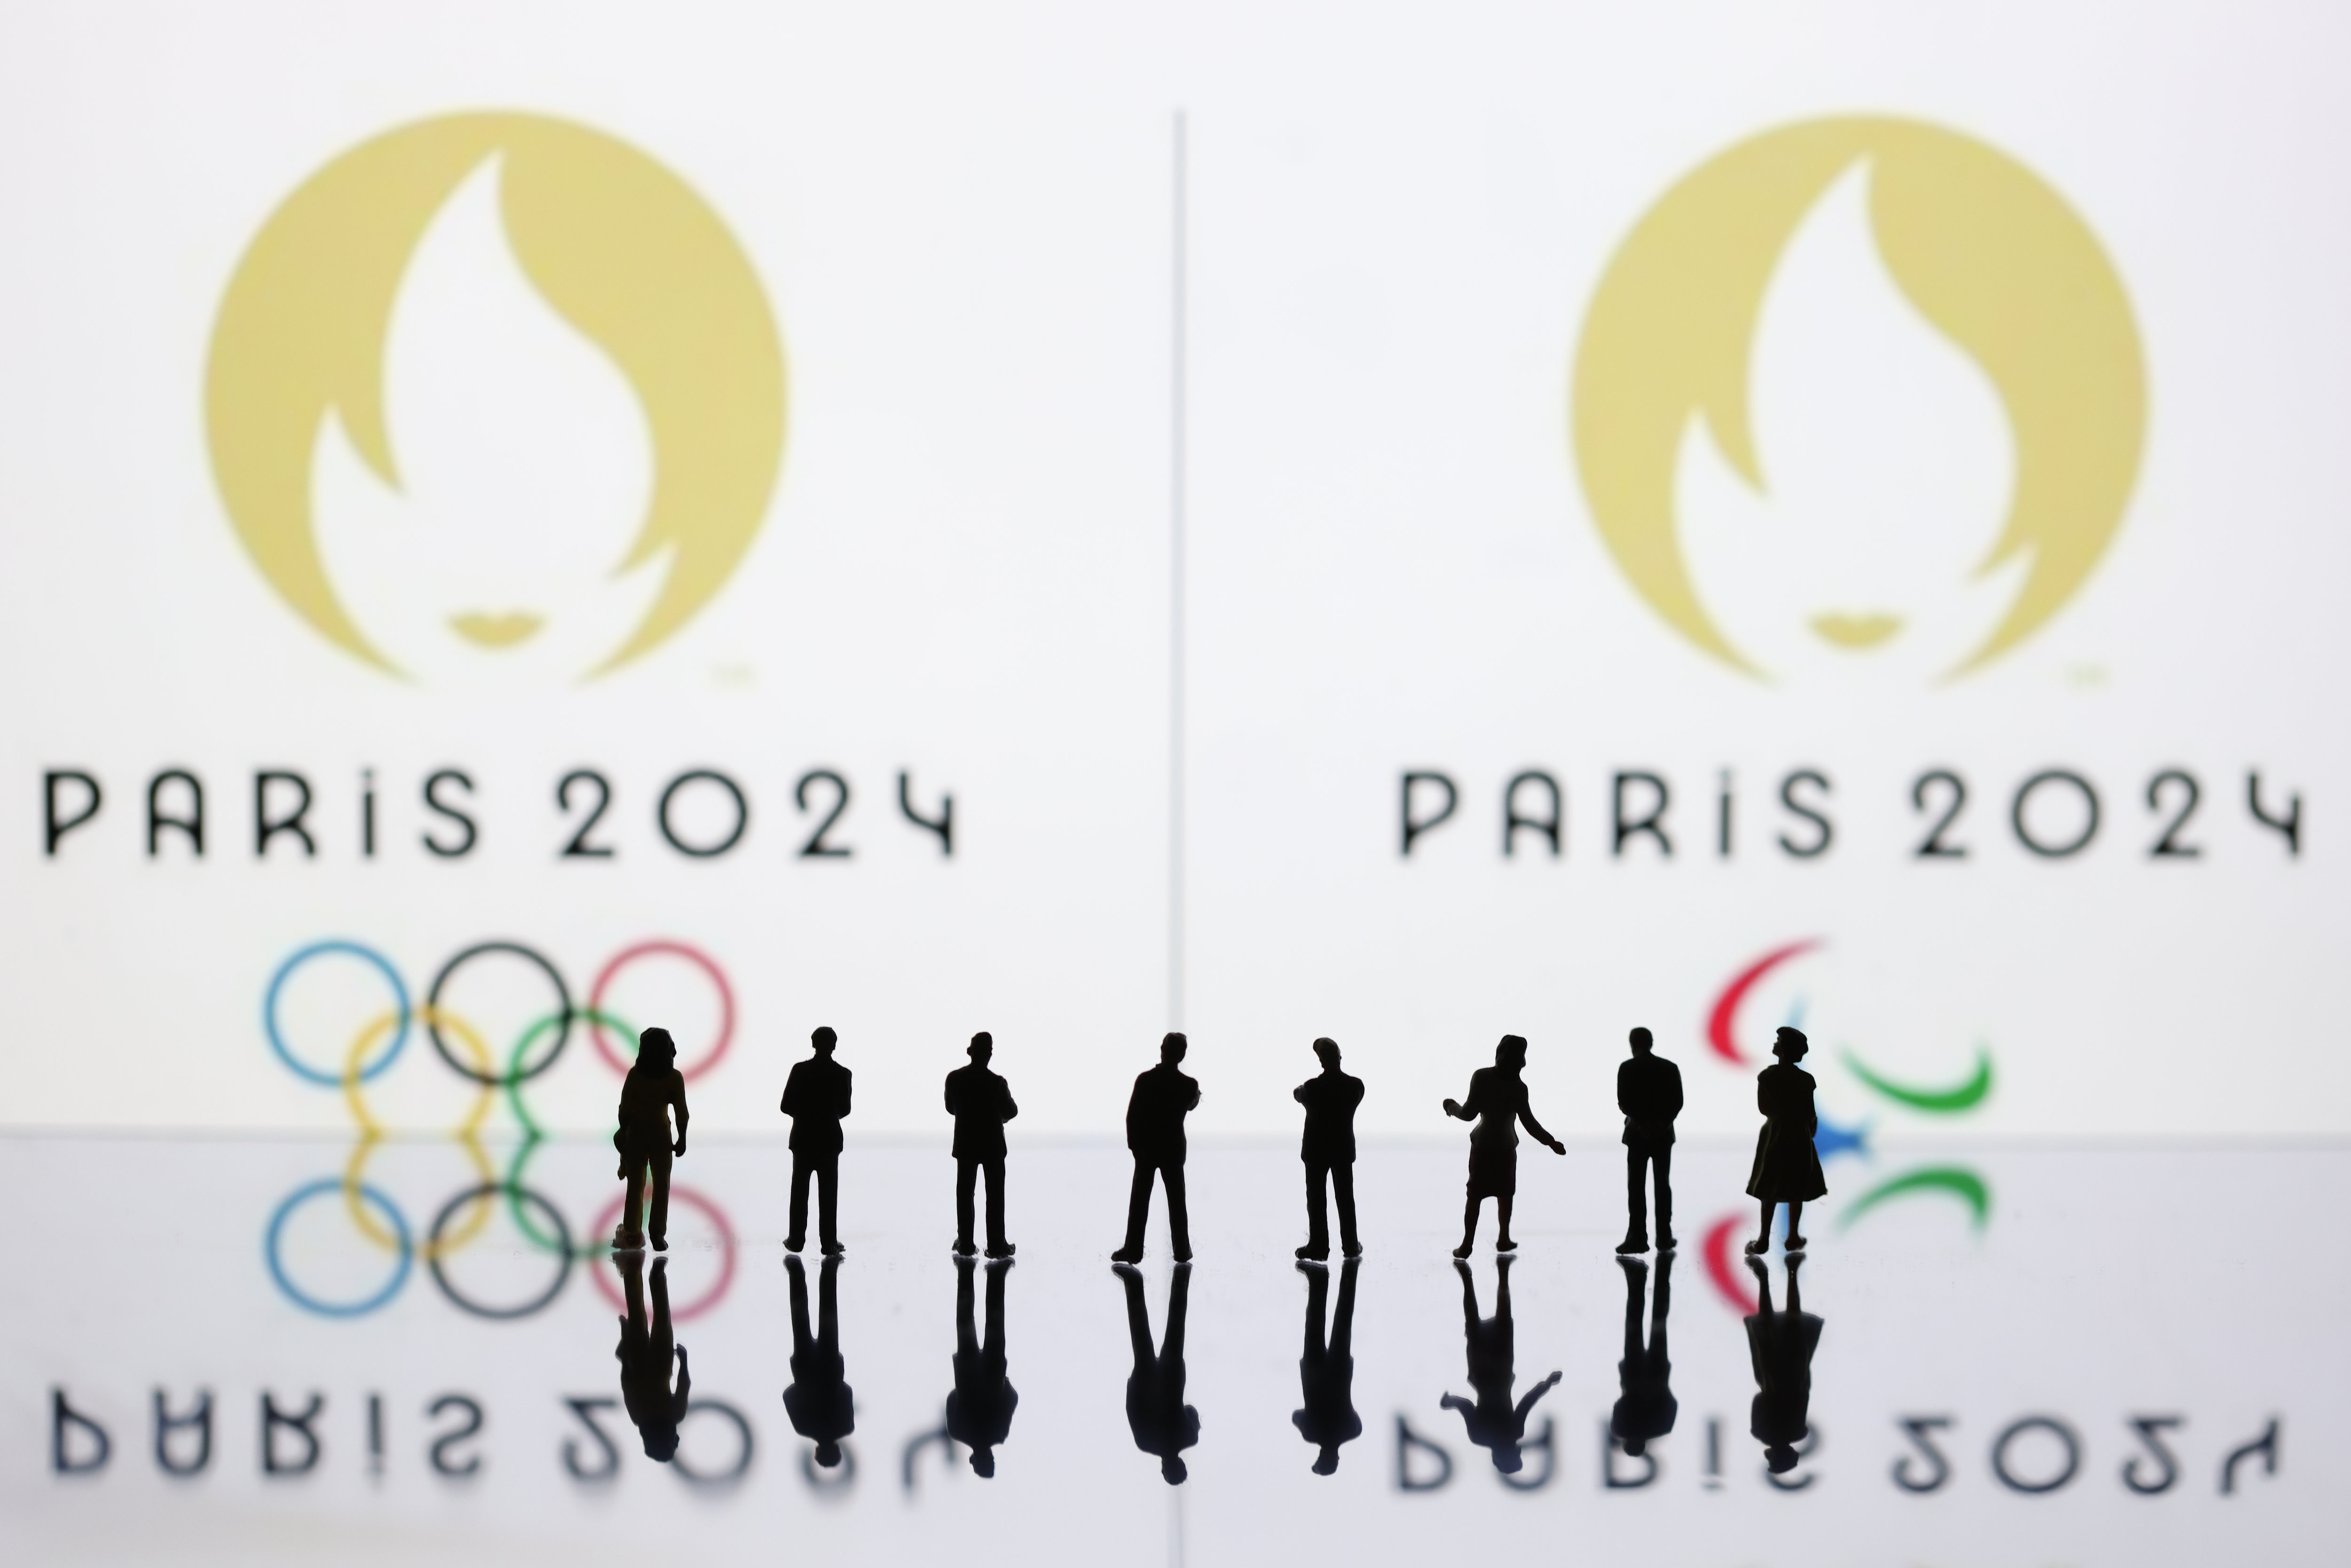 Du 18 juillet au 14 août 2024, les entreprises participant à la diffusion ou à l’organisation des Jeux olympiques pourront suspendre le repos hebdomadaire.